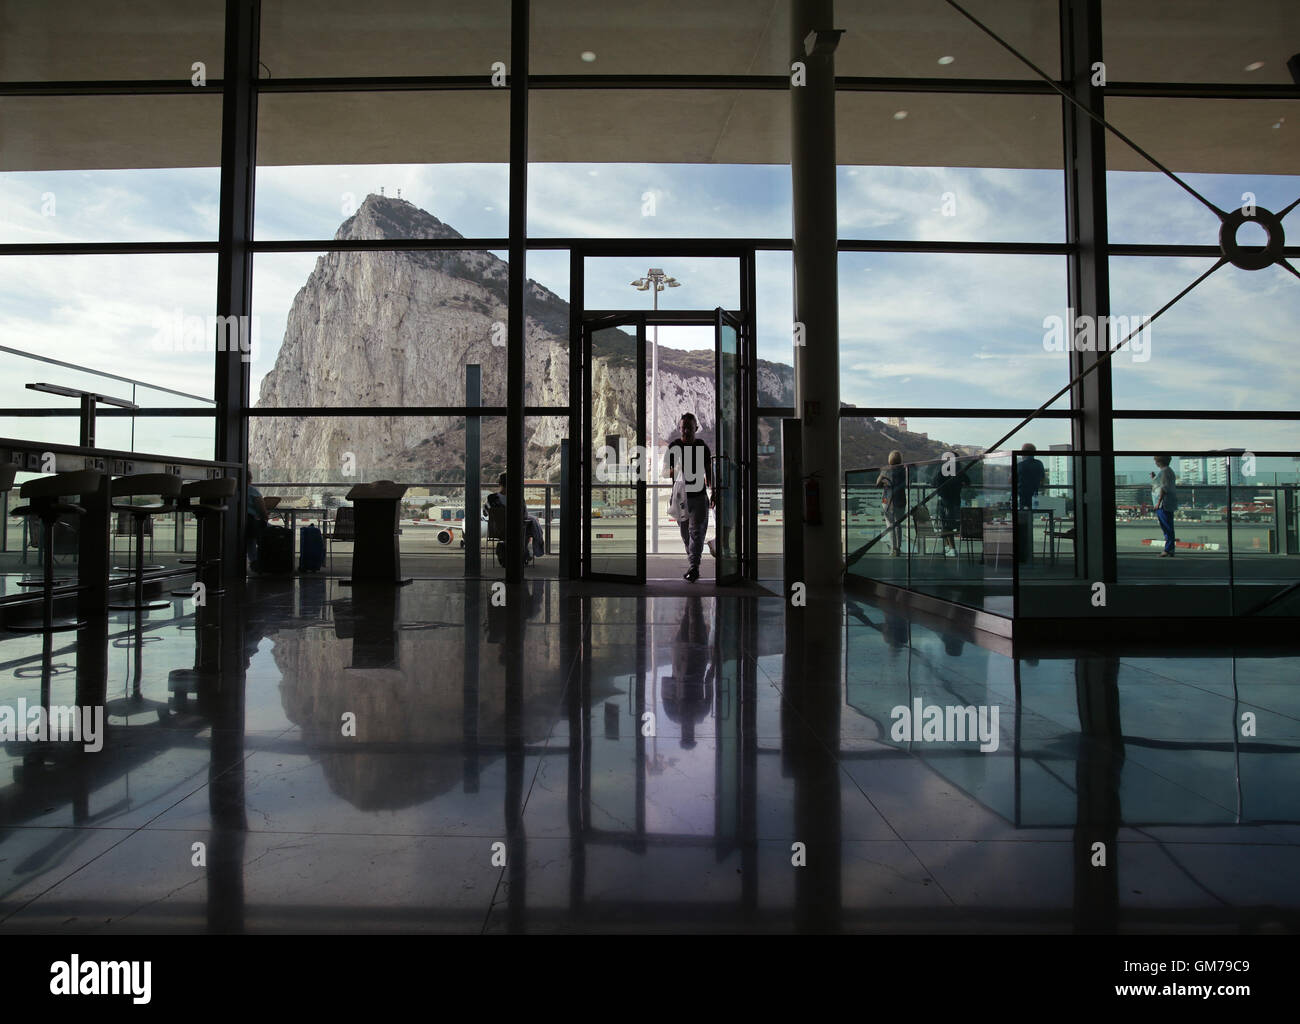 Ein Blick auf den Felsen von Gibraltar von der Abflughalle des Flughafens von Gibraltar. PRESSEVERBAND Foto. Bild Datum: Freitag, 11. September 2015. Bildnachweis sollte lauten: Yui Mok/PA Wire Stockfoto